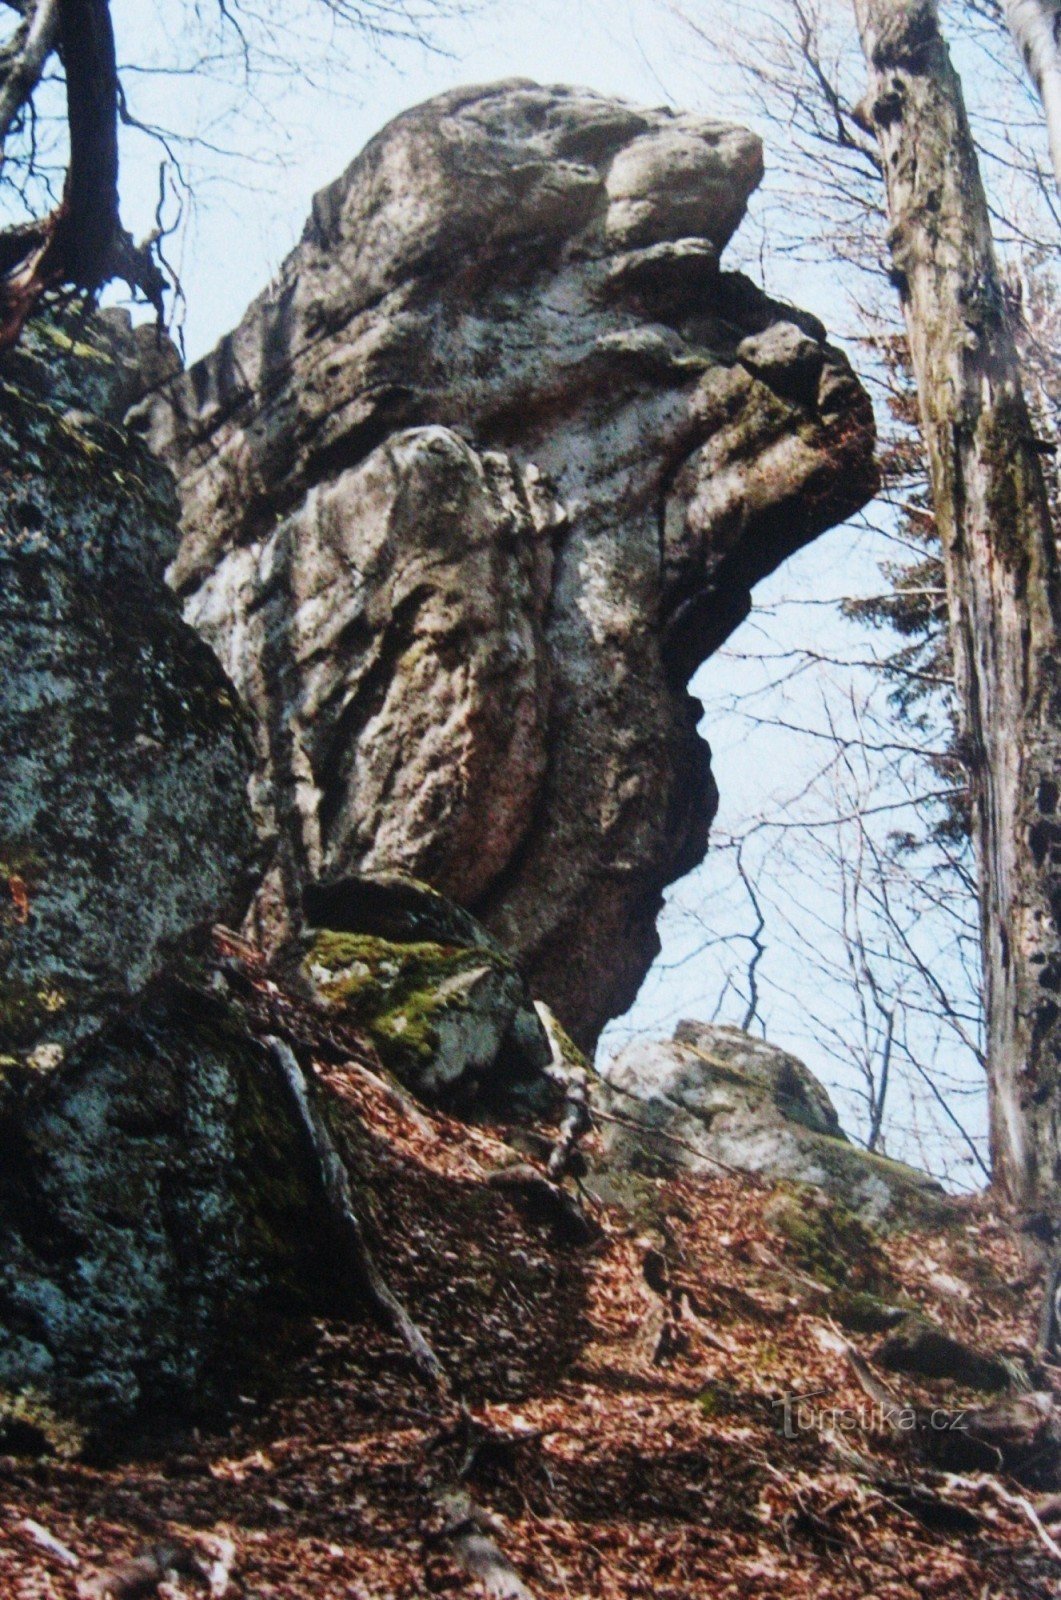 Rocks of Hostýnské vrchy - 12. Čerňava og Smrduta